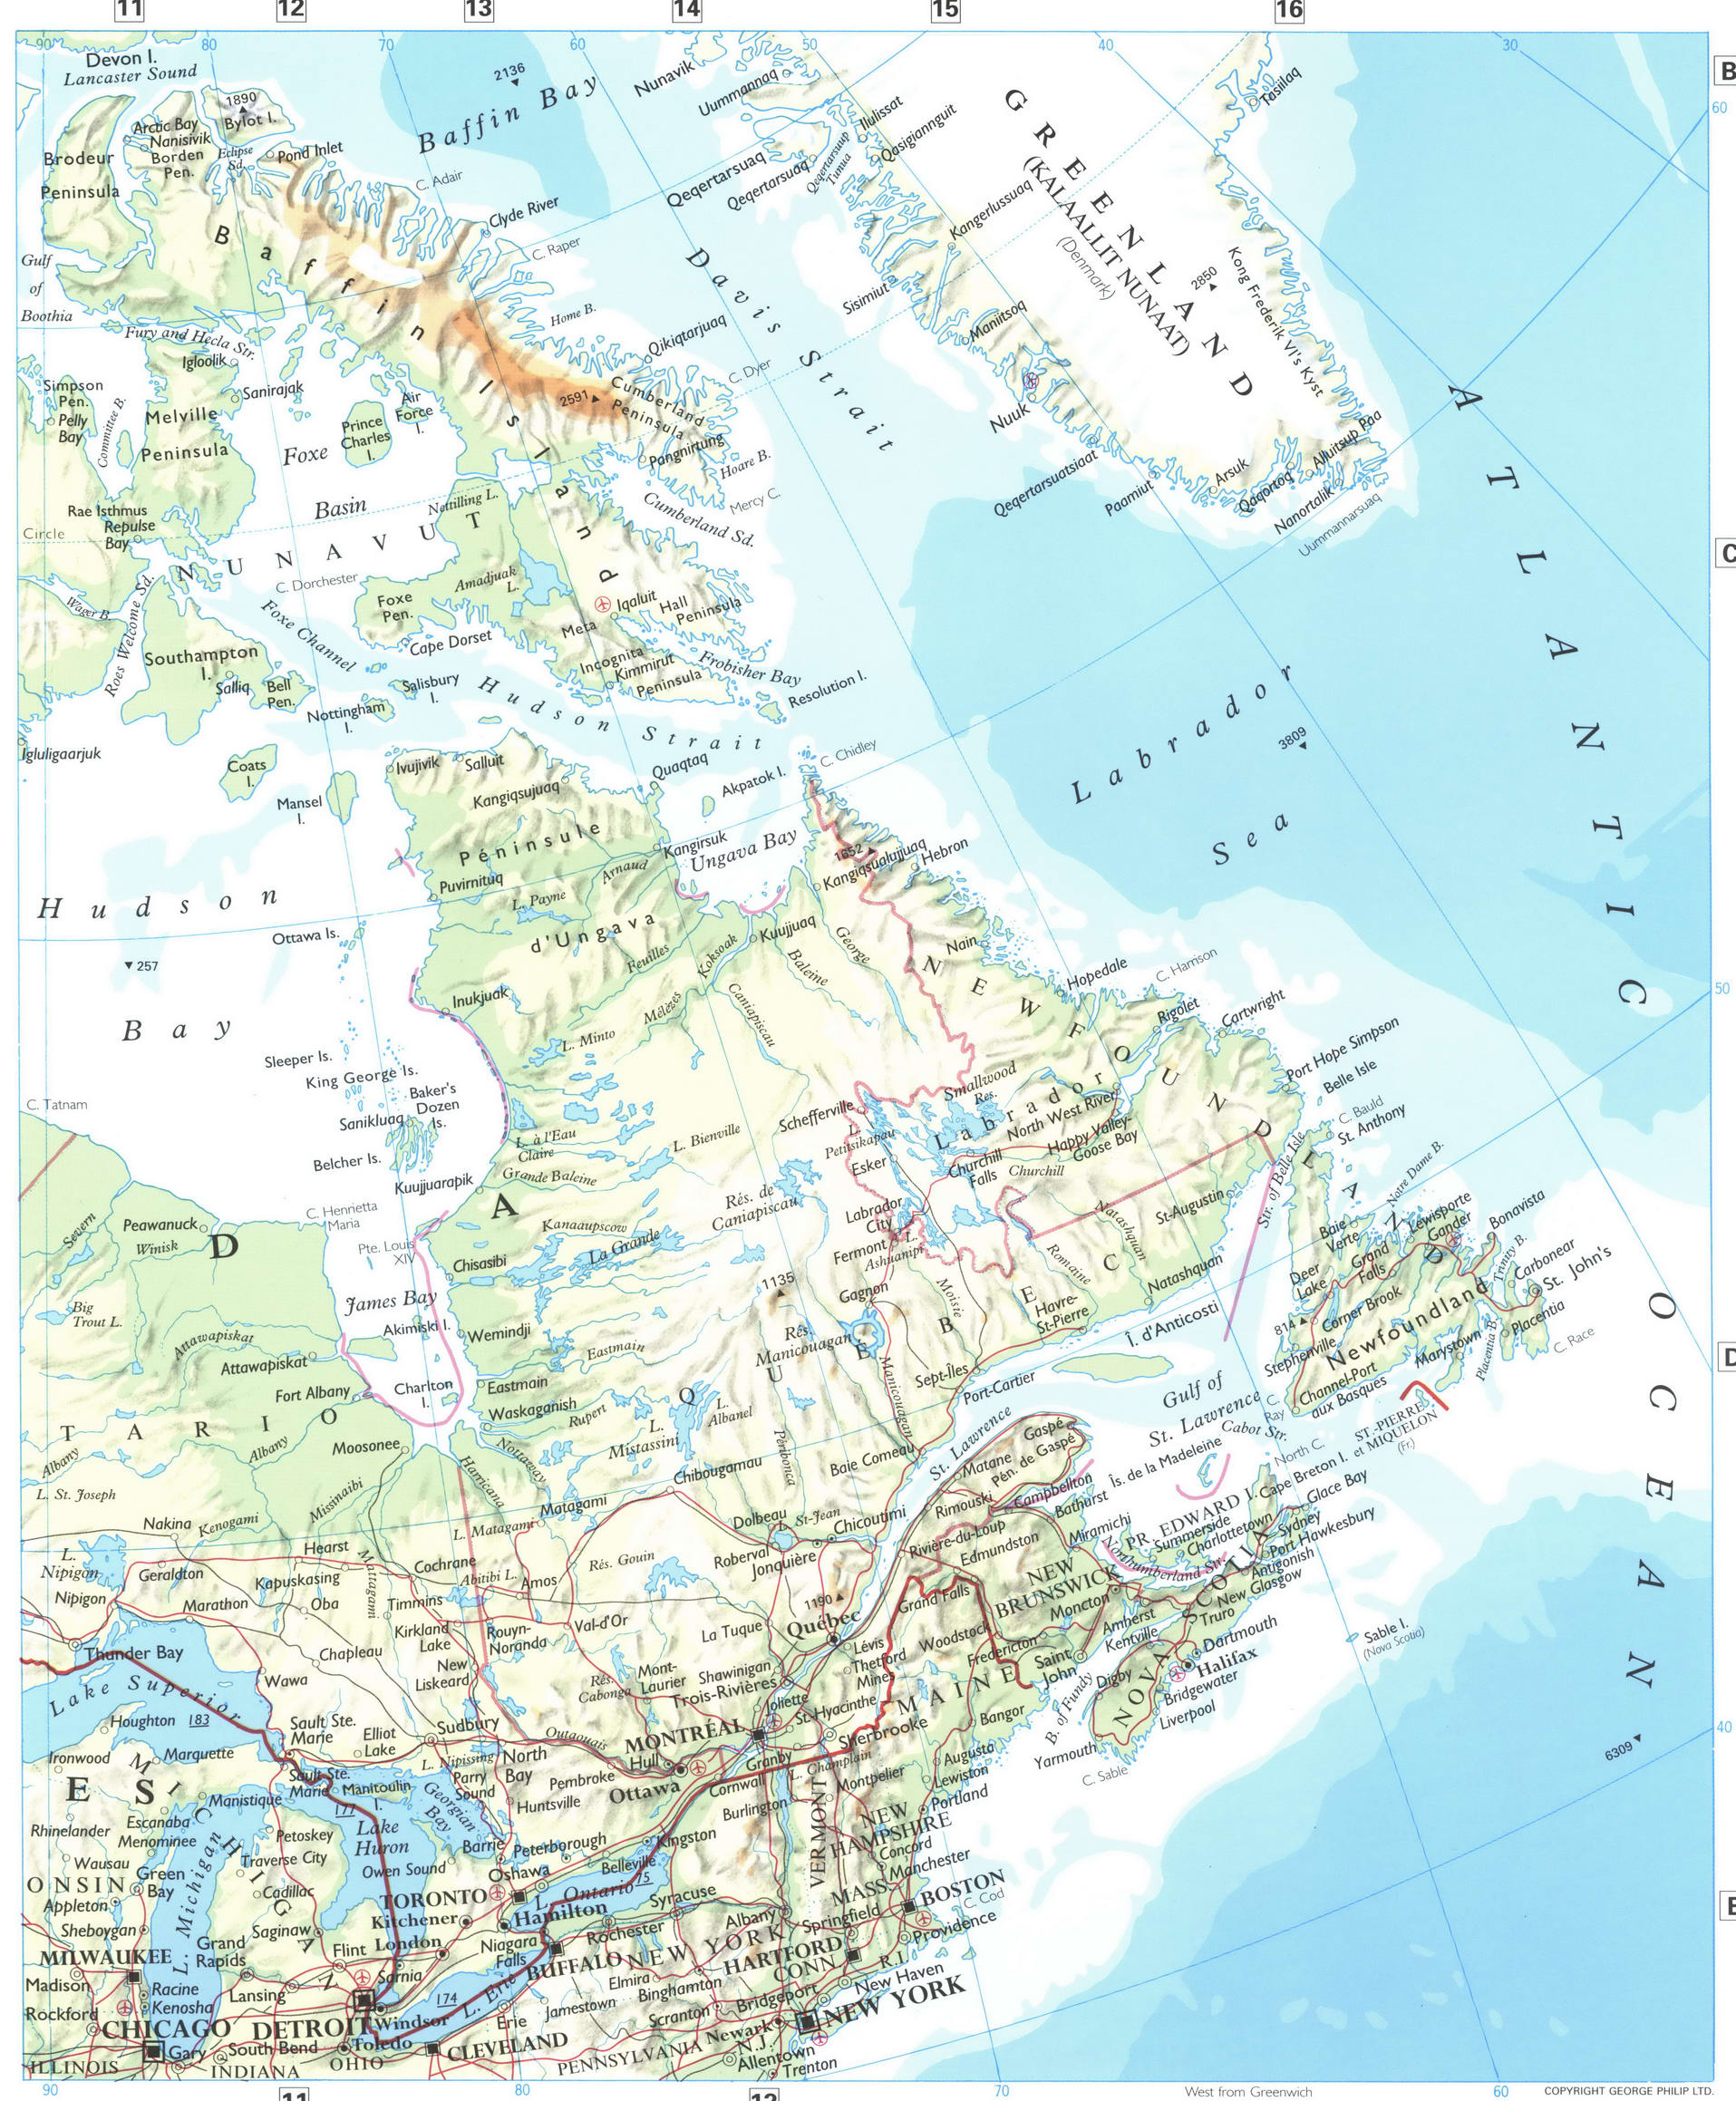 Eastern Canada map